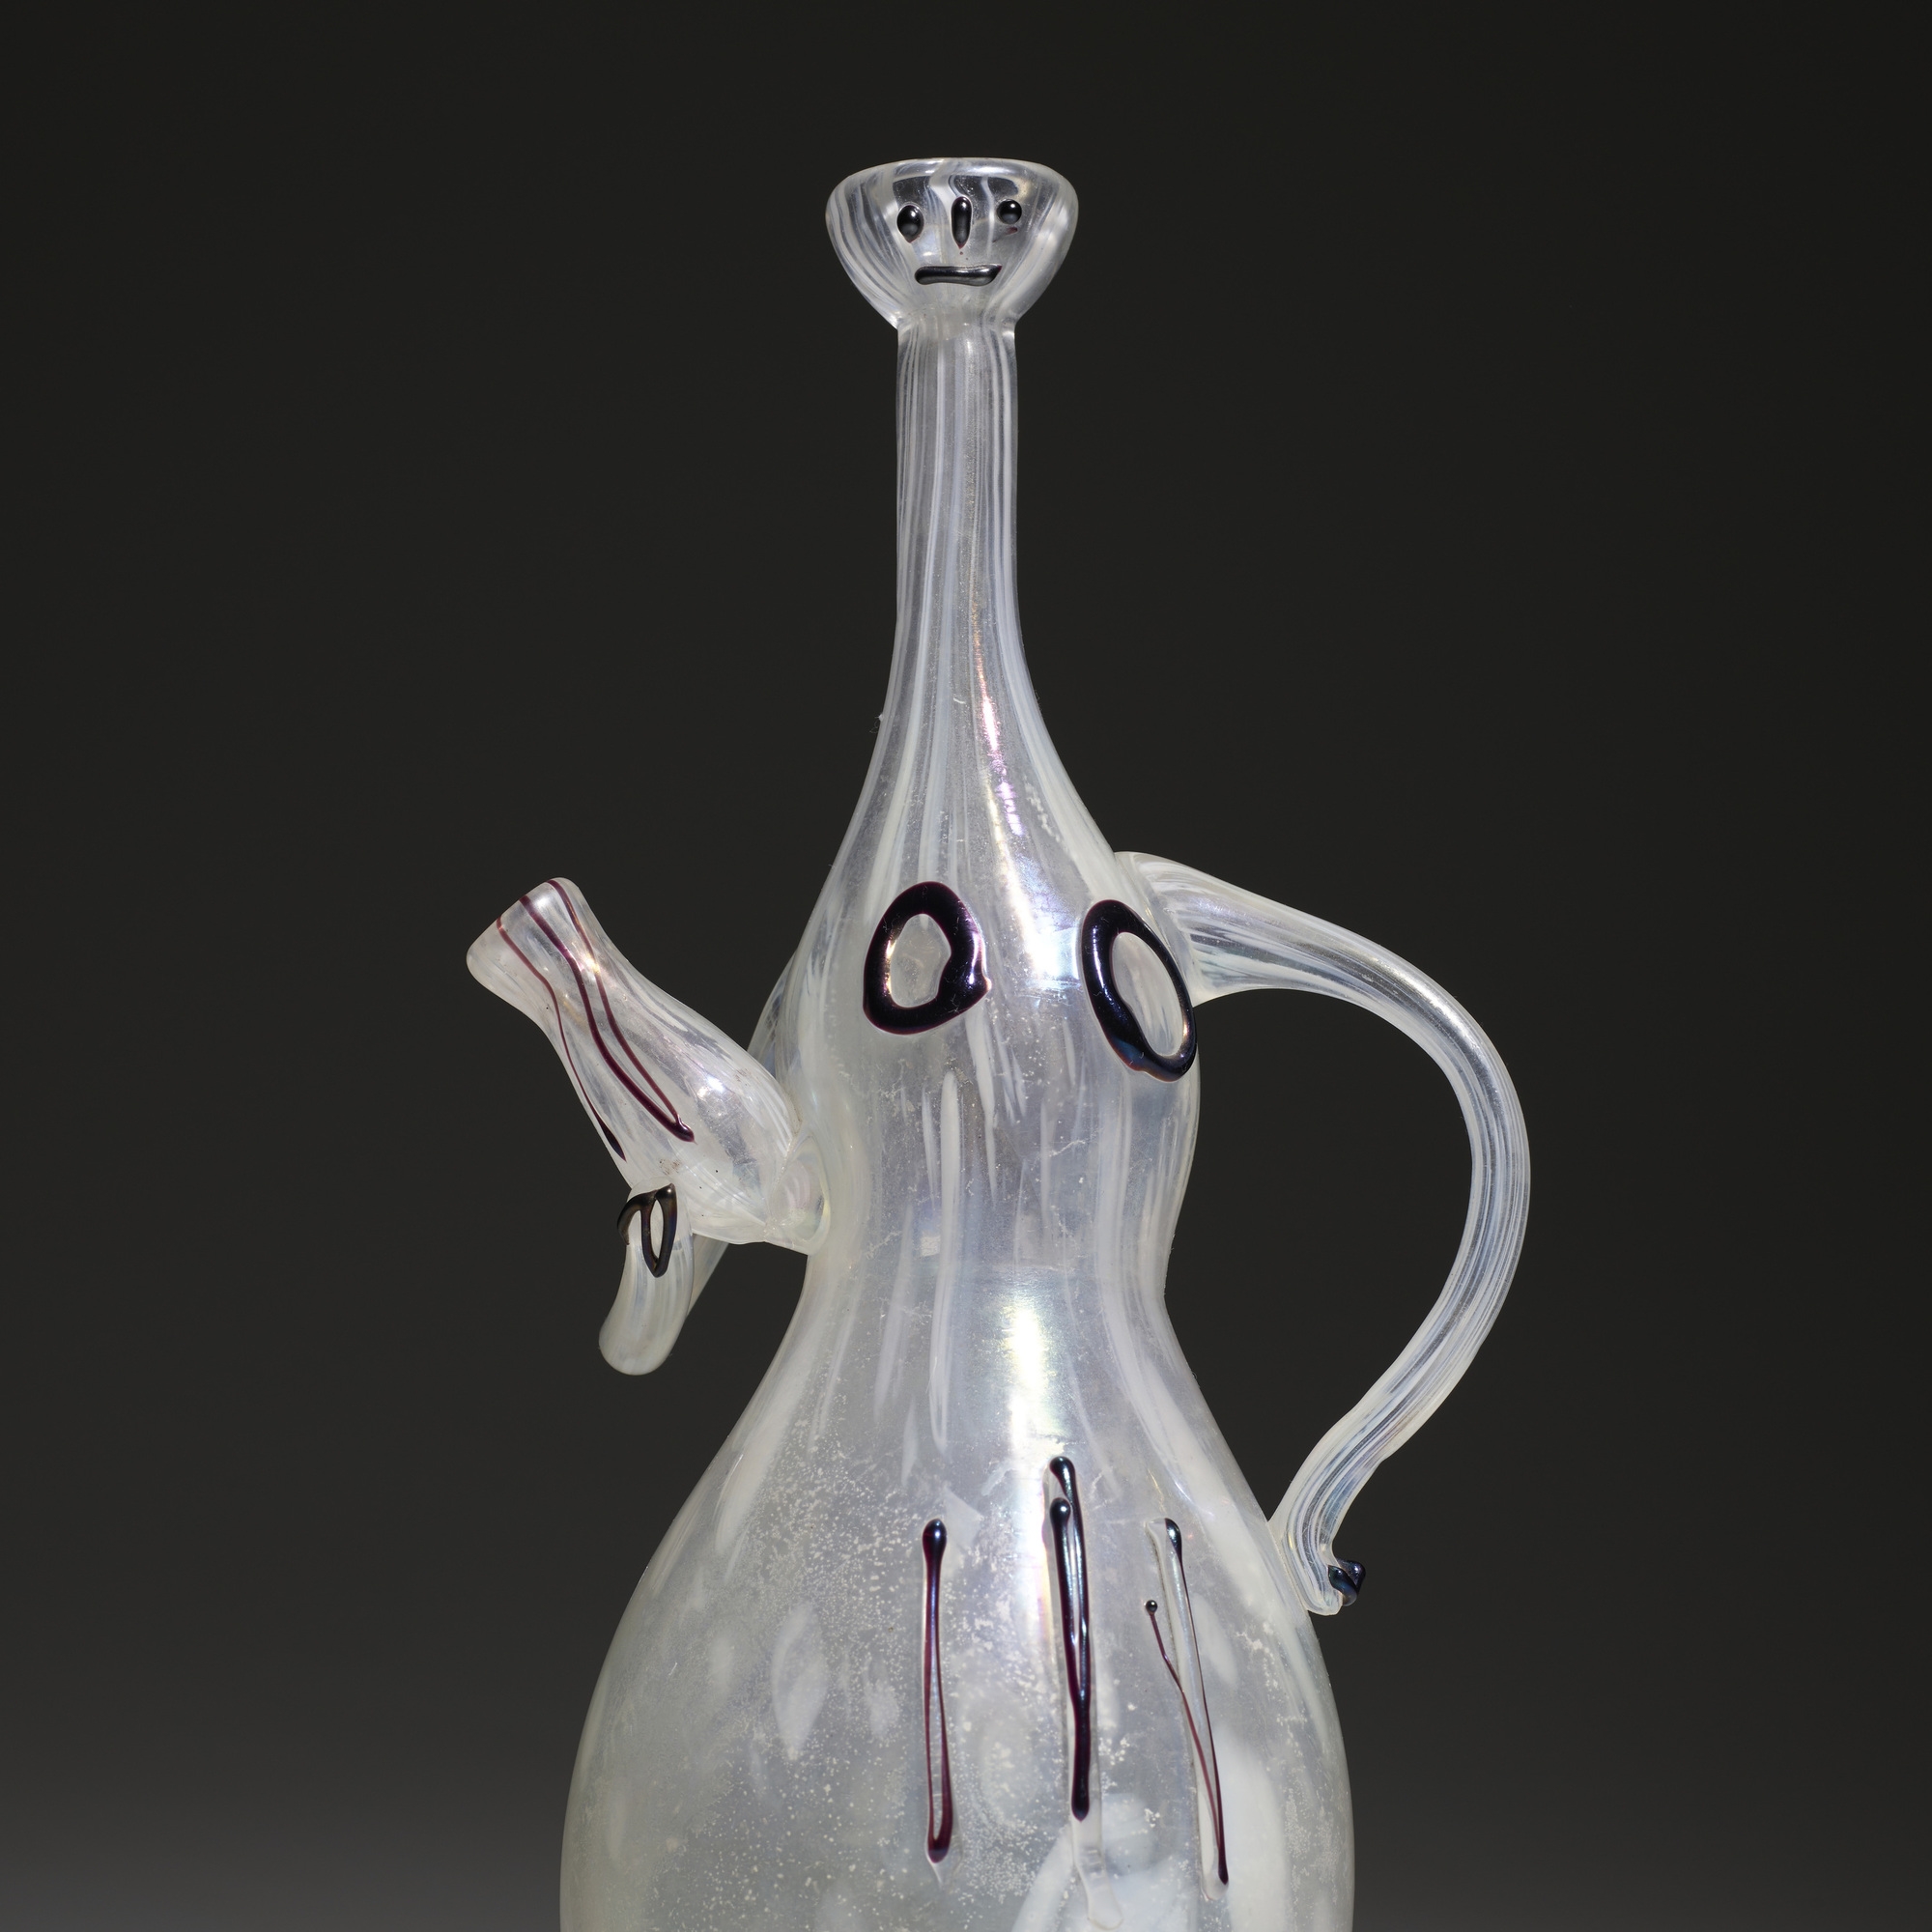 Artwork by Pablo Picasso, Portatrice d'Acqua pitcher, Made of glass